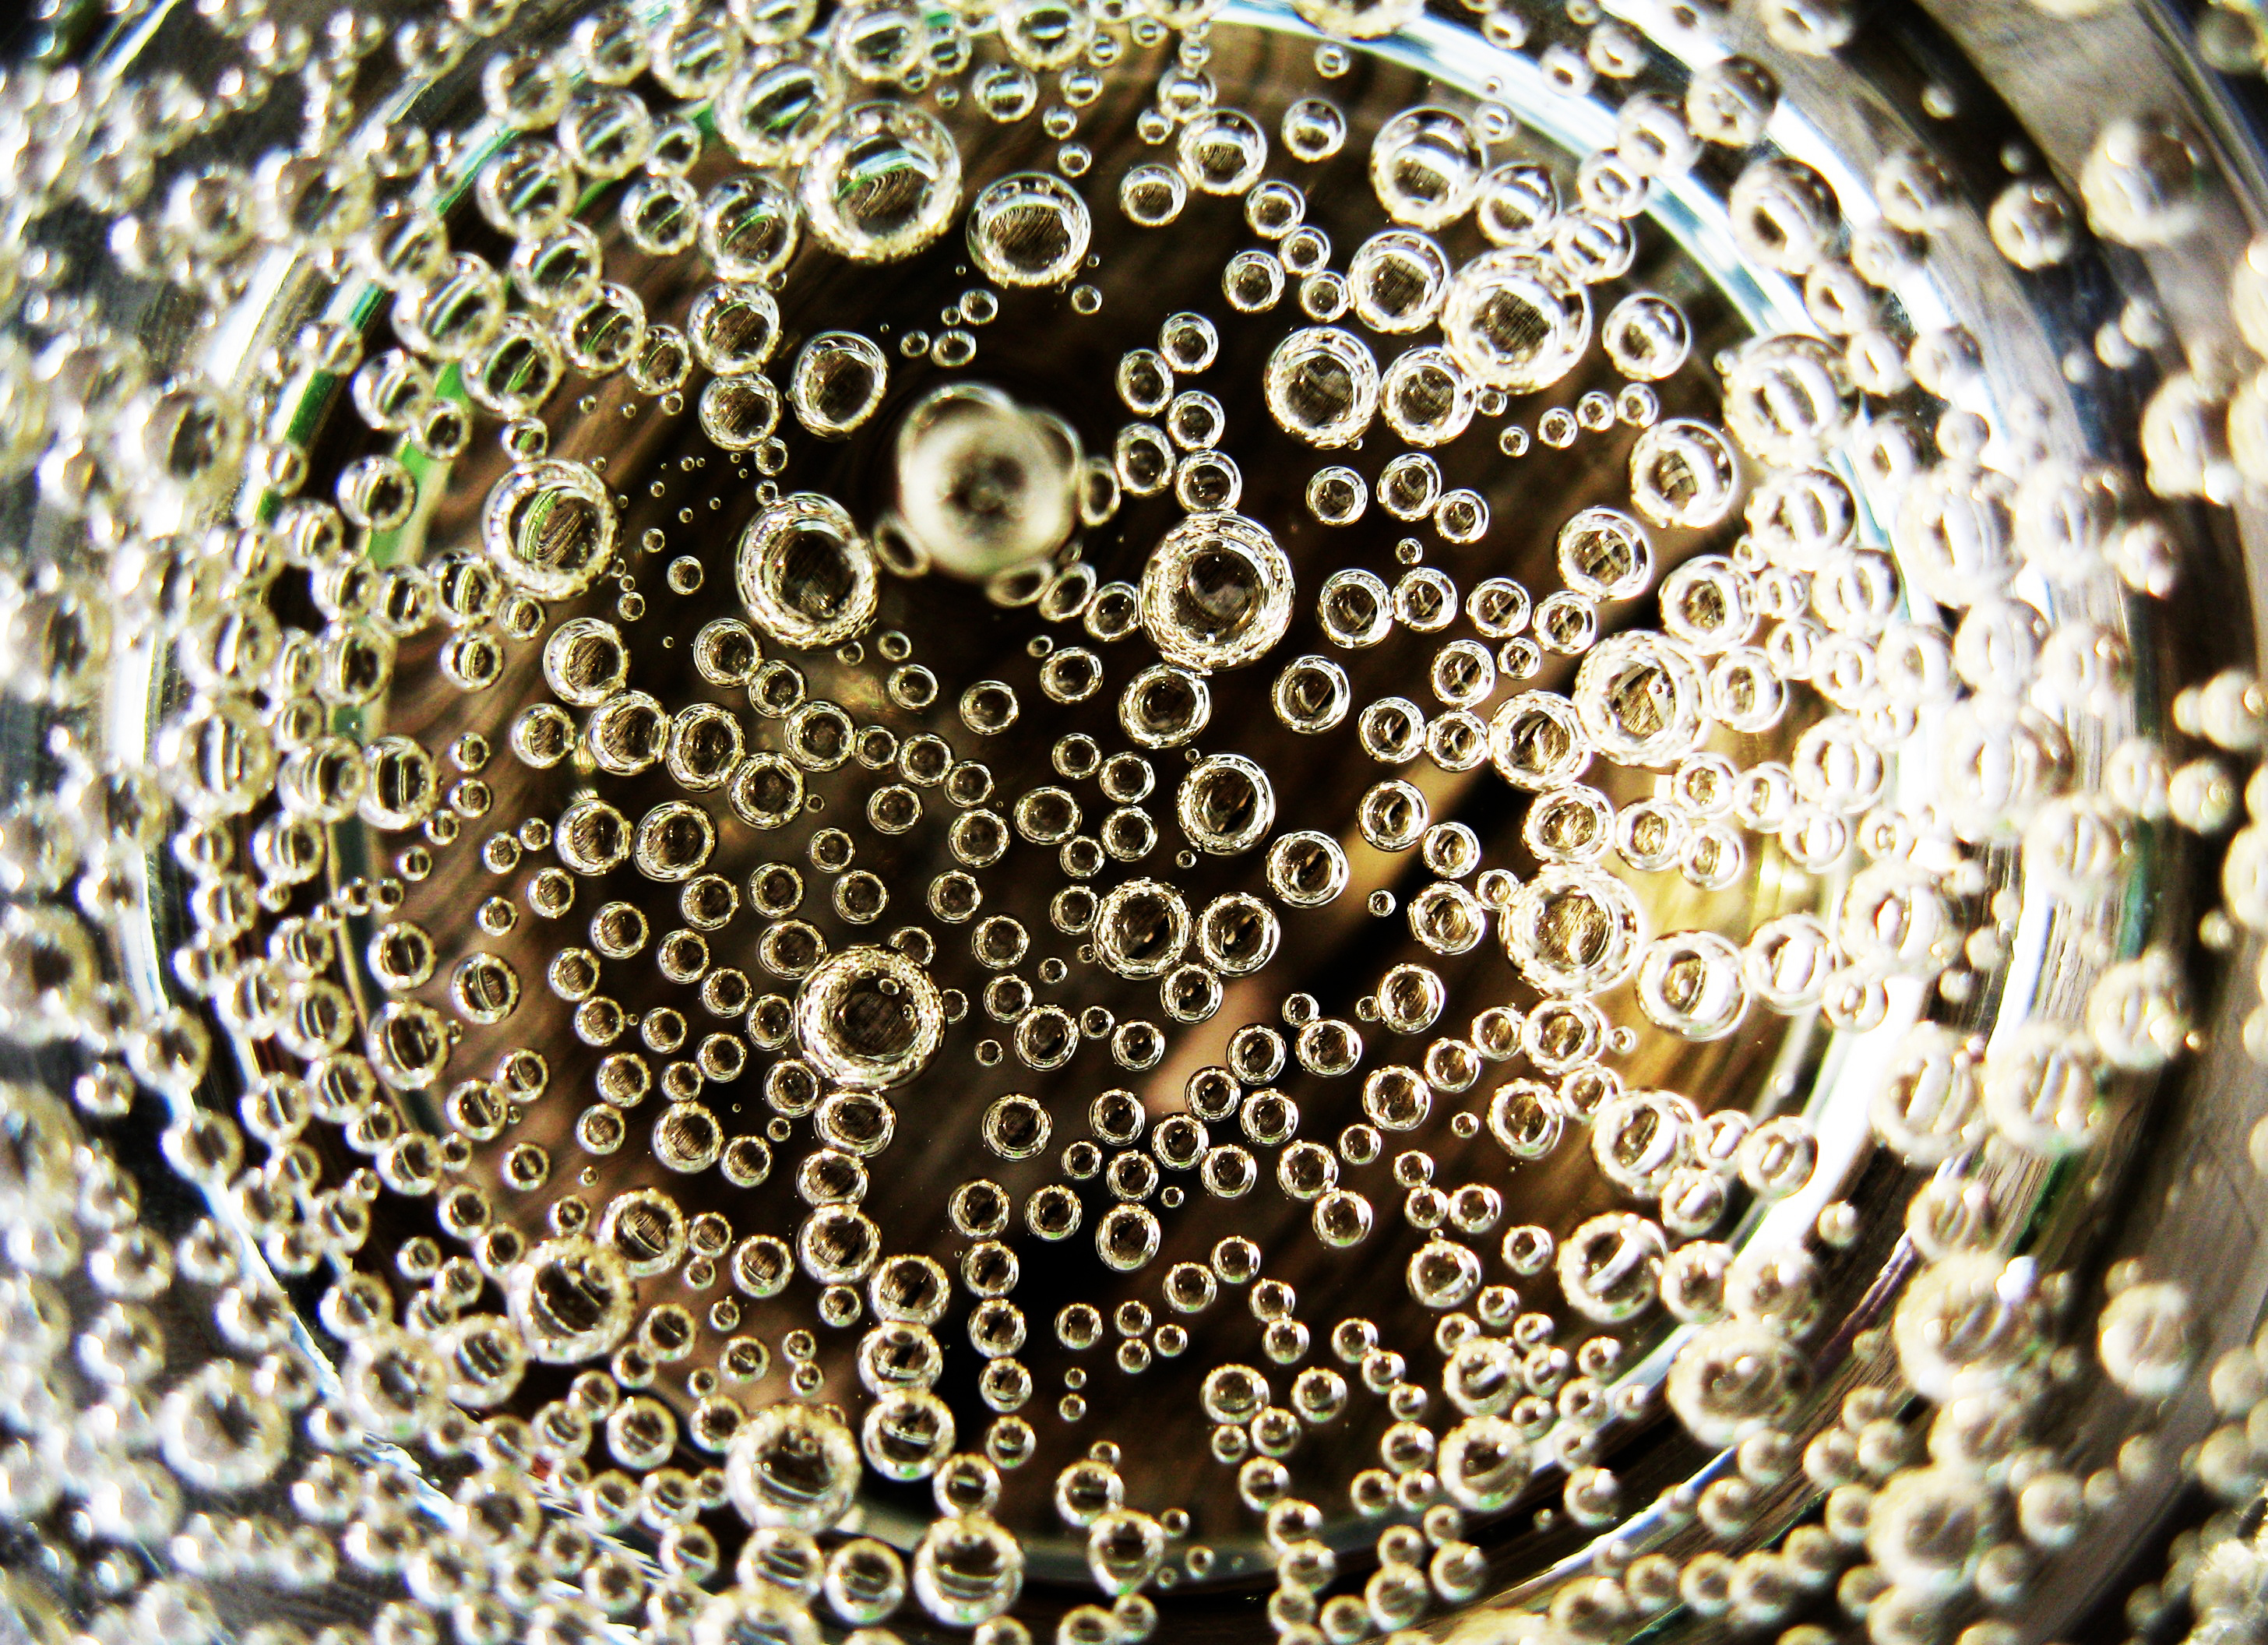 Bubbles - Sparkling future?